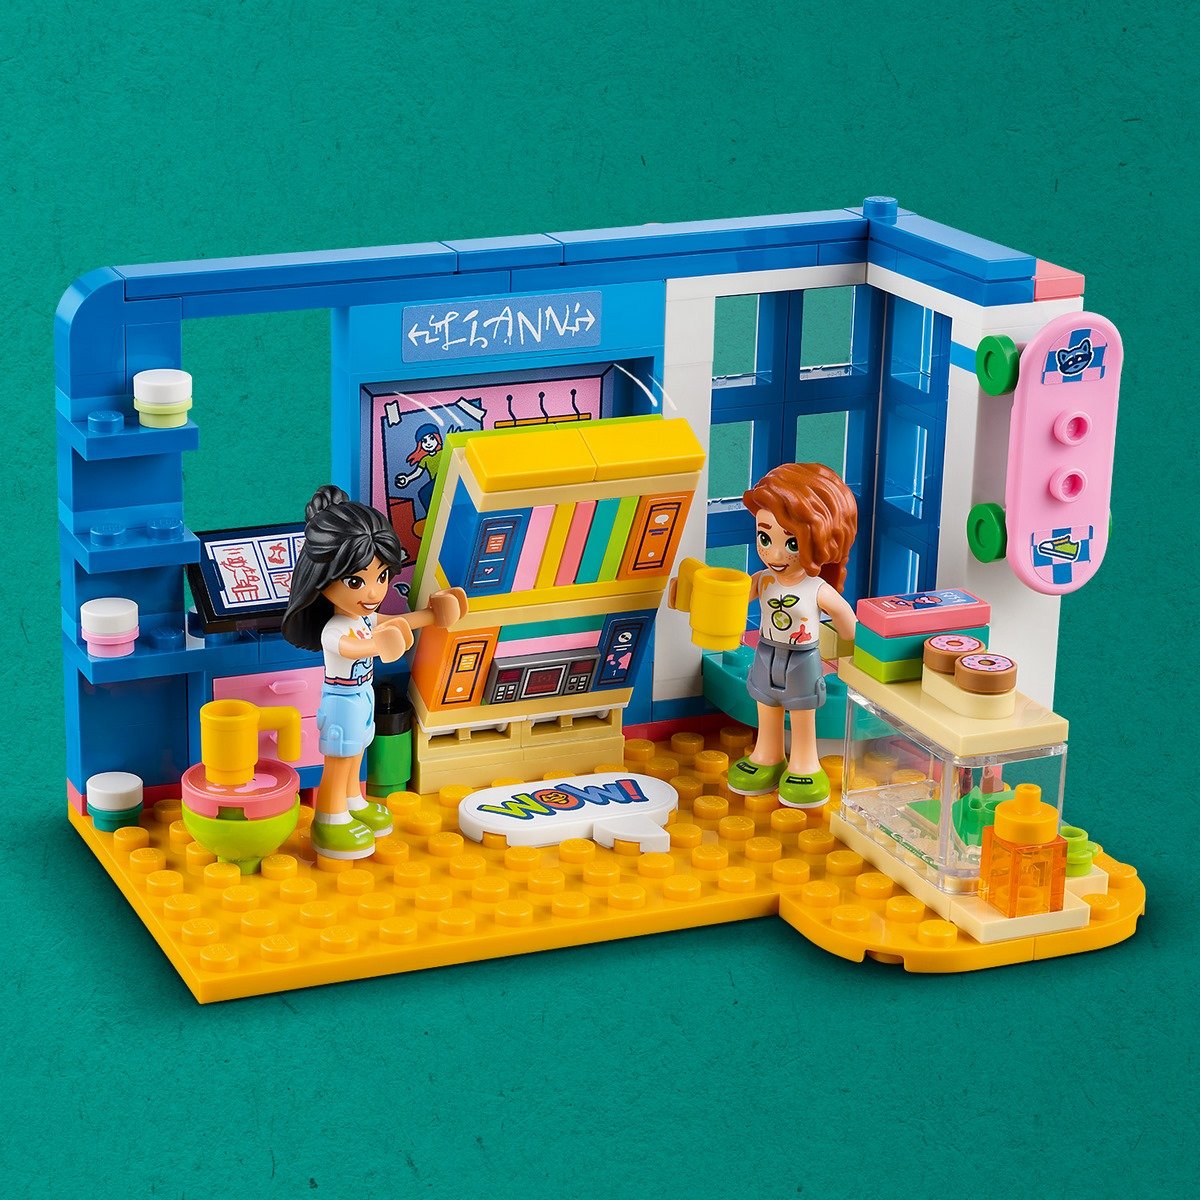 Chambre de Liann Lego Friends 41379 - La Grande Récré